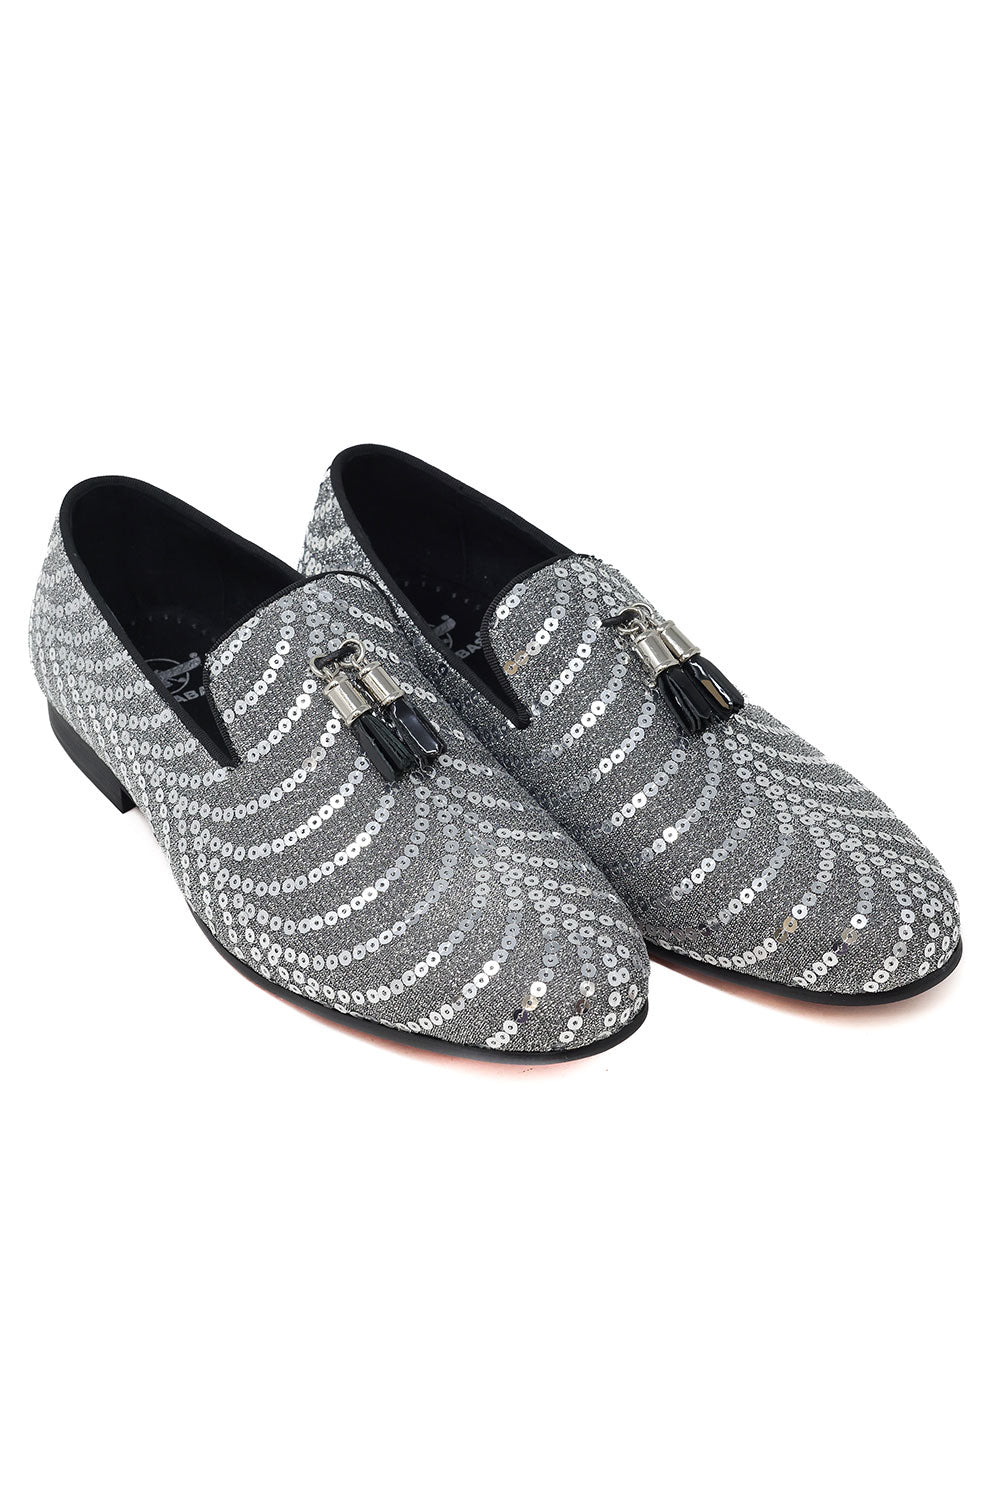 Barabas Men's Sequin Design Tassel Slip On Loafer Shoes 2SHR8 Gray Silver